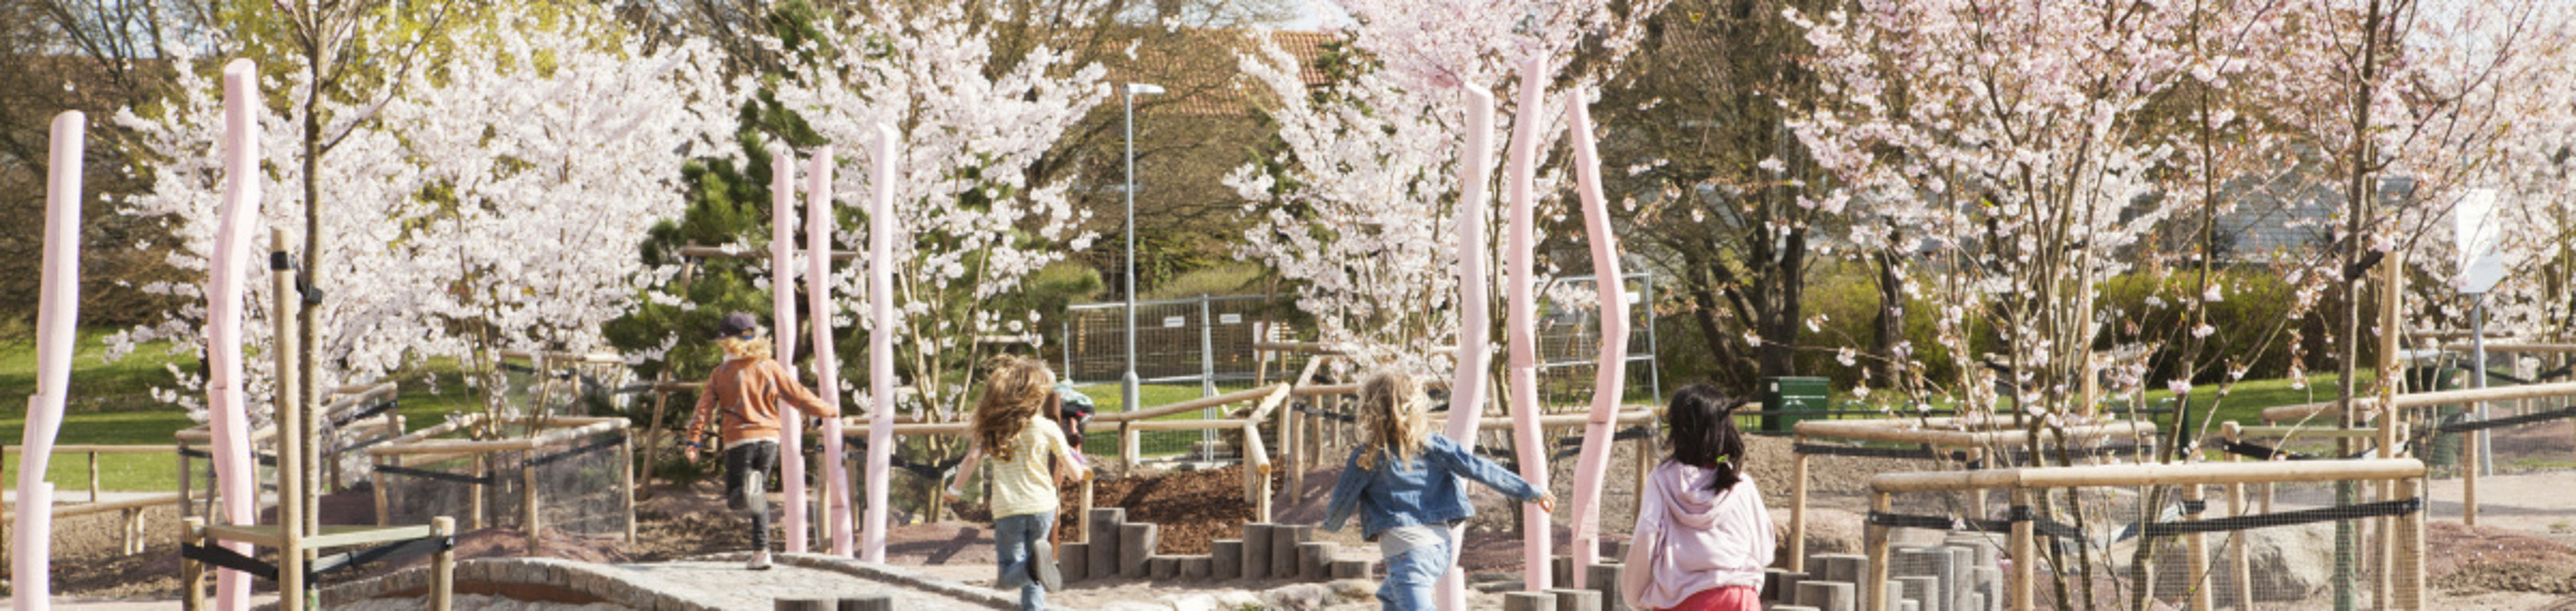 Fyra barn springer på ett trädäck på lekplatsen. I Bakgrunden finns flera blommande körsbärsträd.  